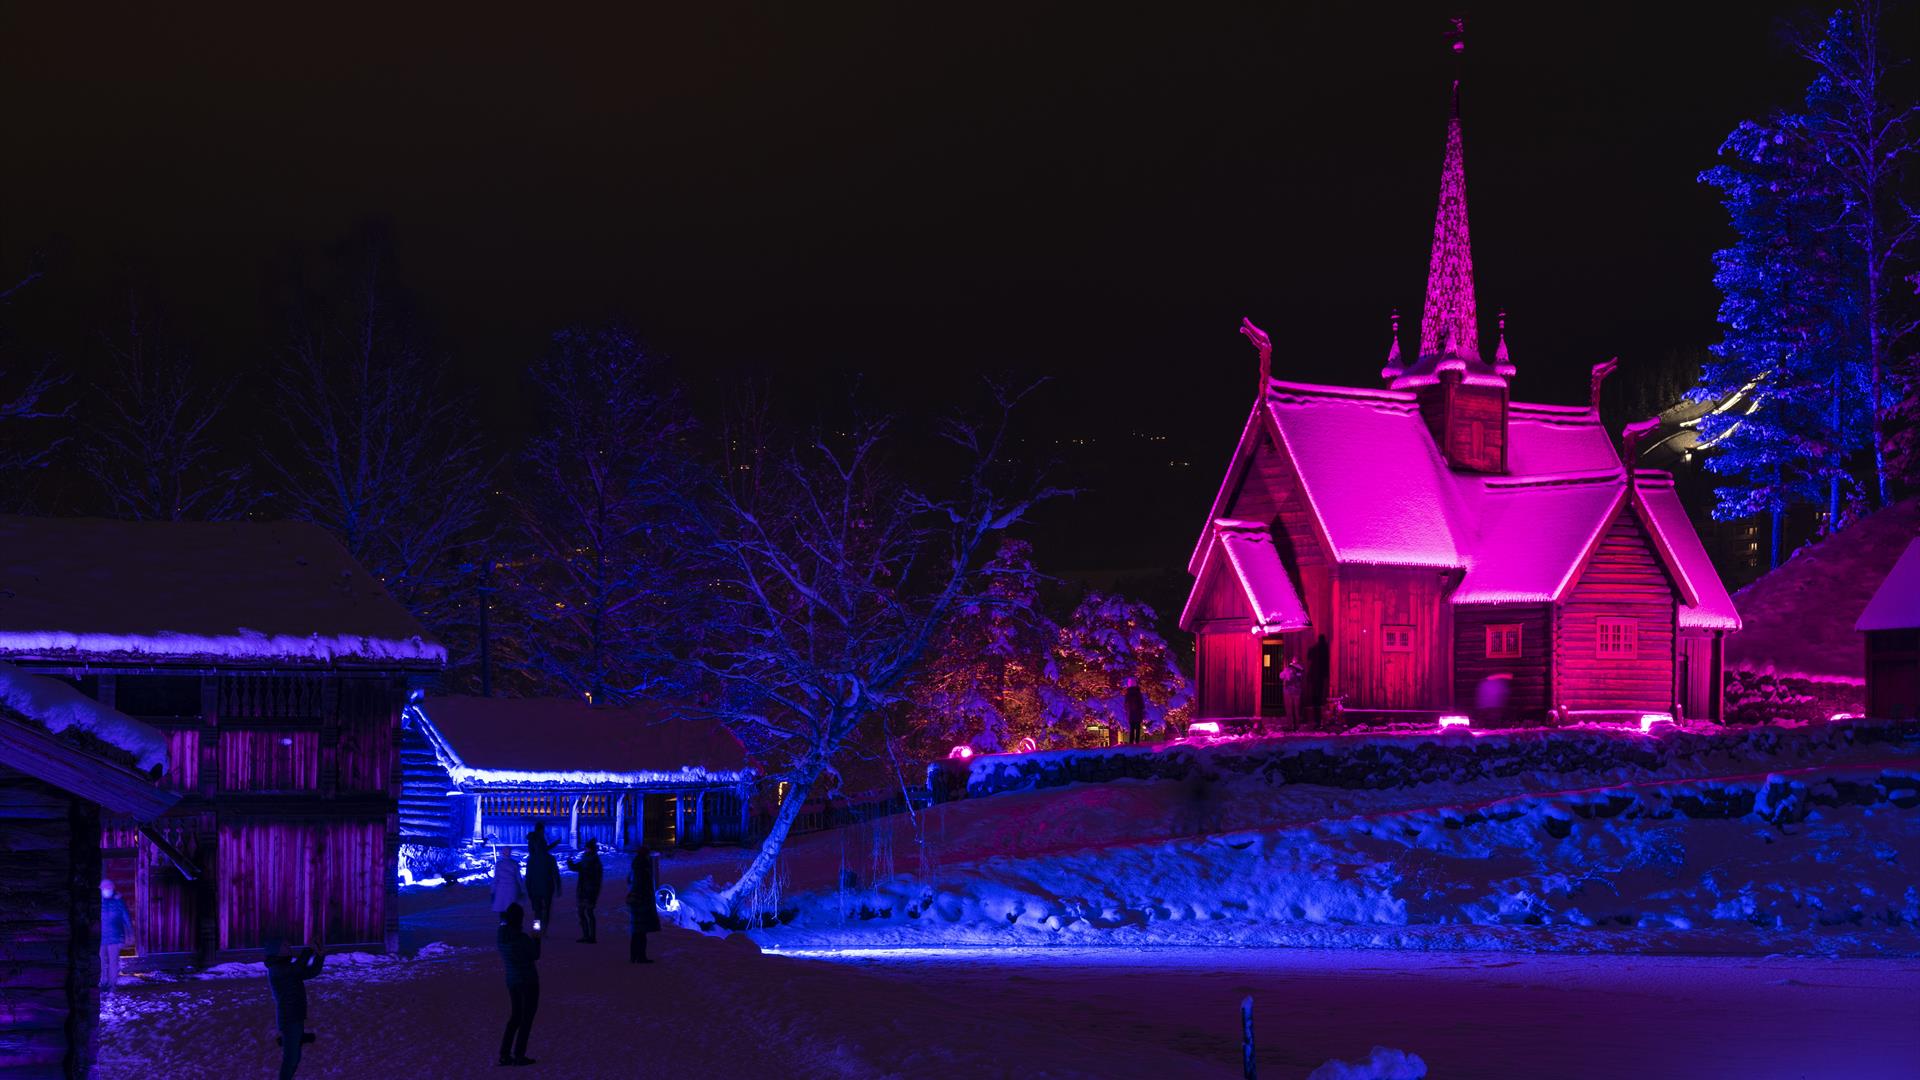 Garmo stavkirke lyssatt i rødt lys en vinterkveld.